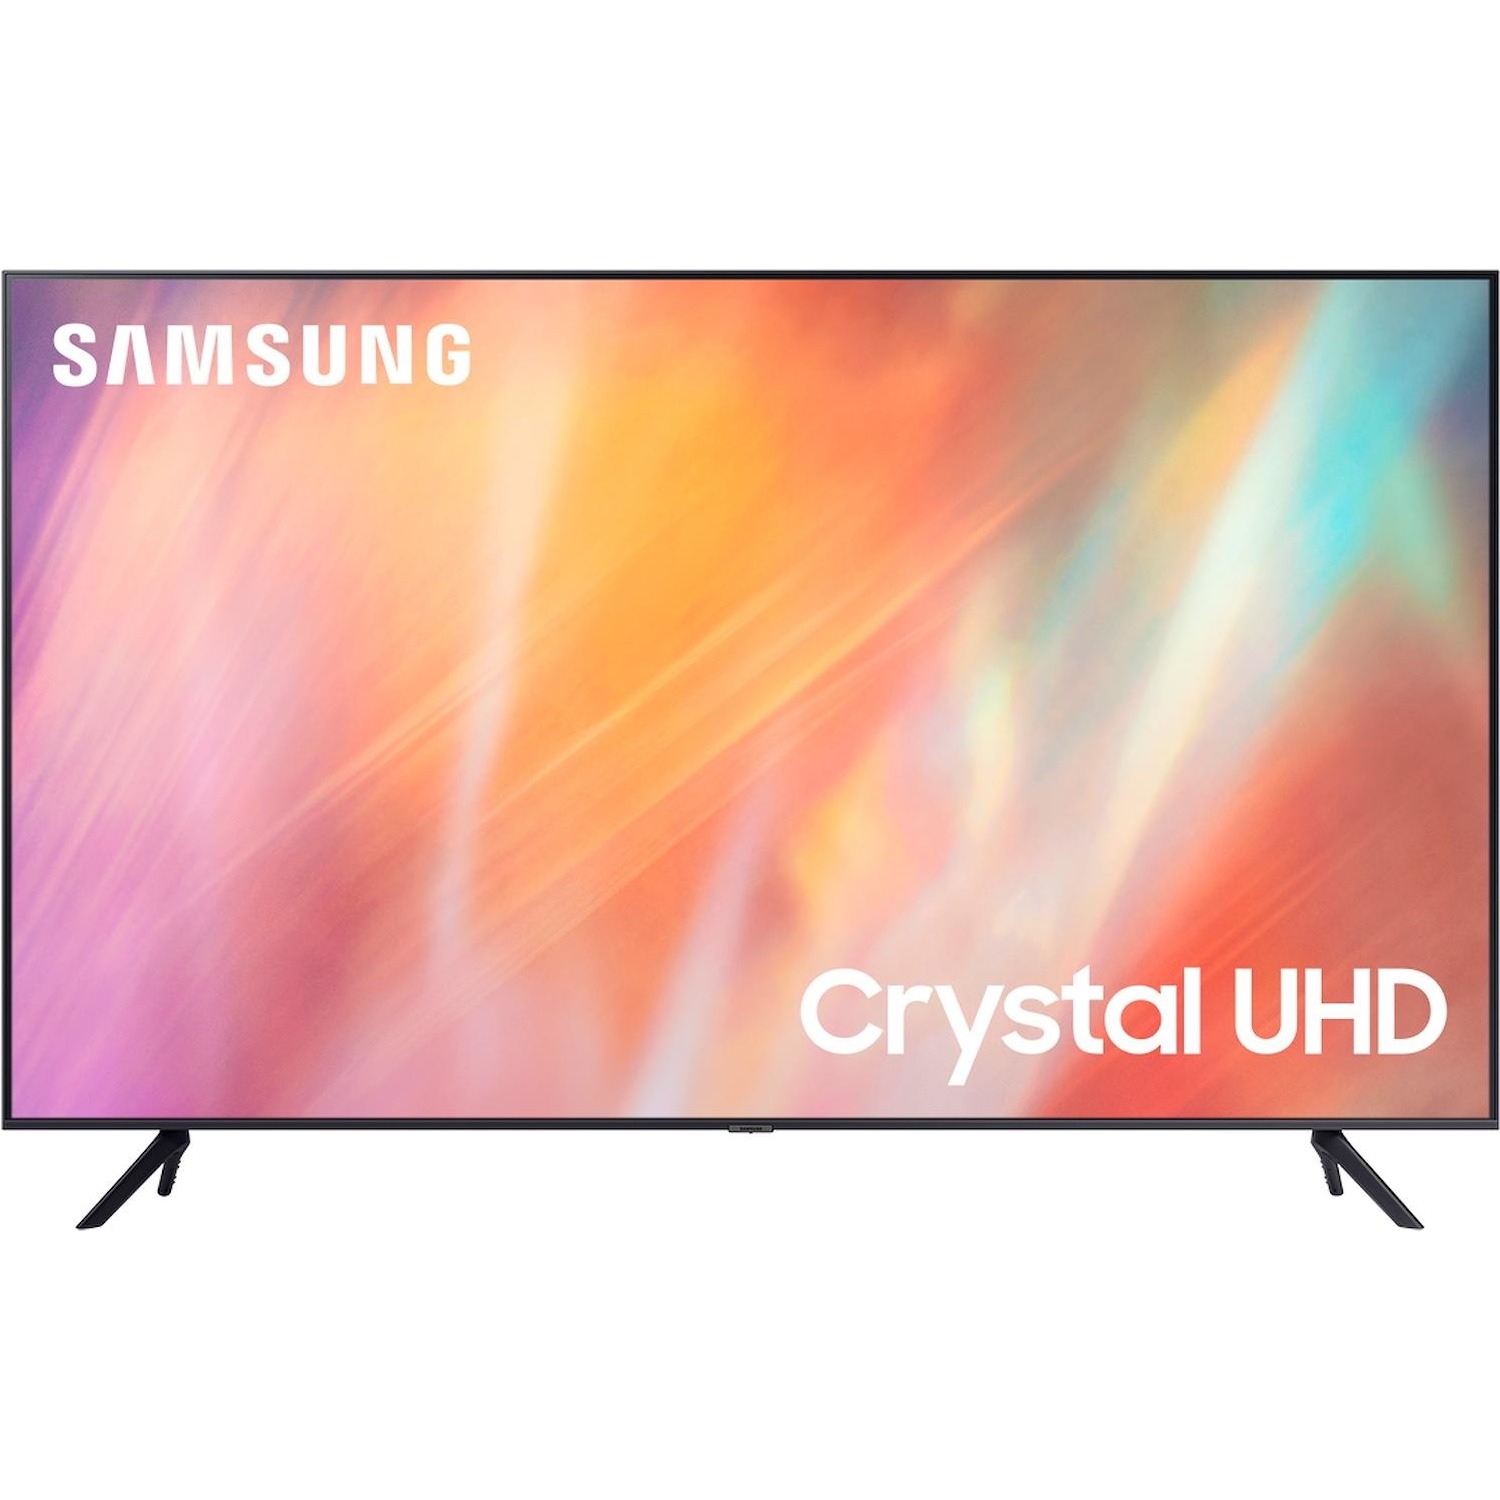 Immagine per TV LED Samsung 65AU7090 Calibrato 4K e FULL HD da DIMOStore